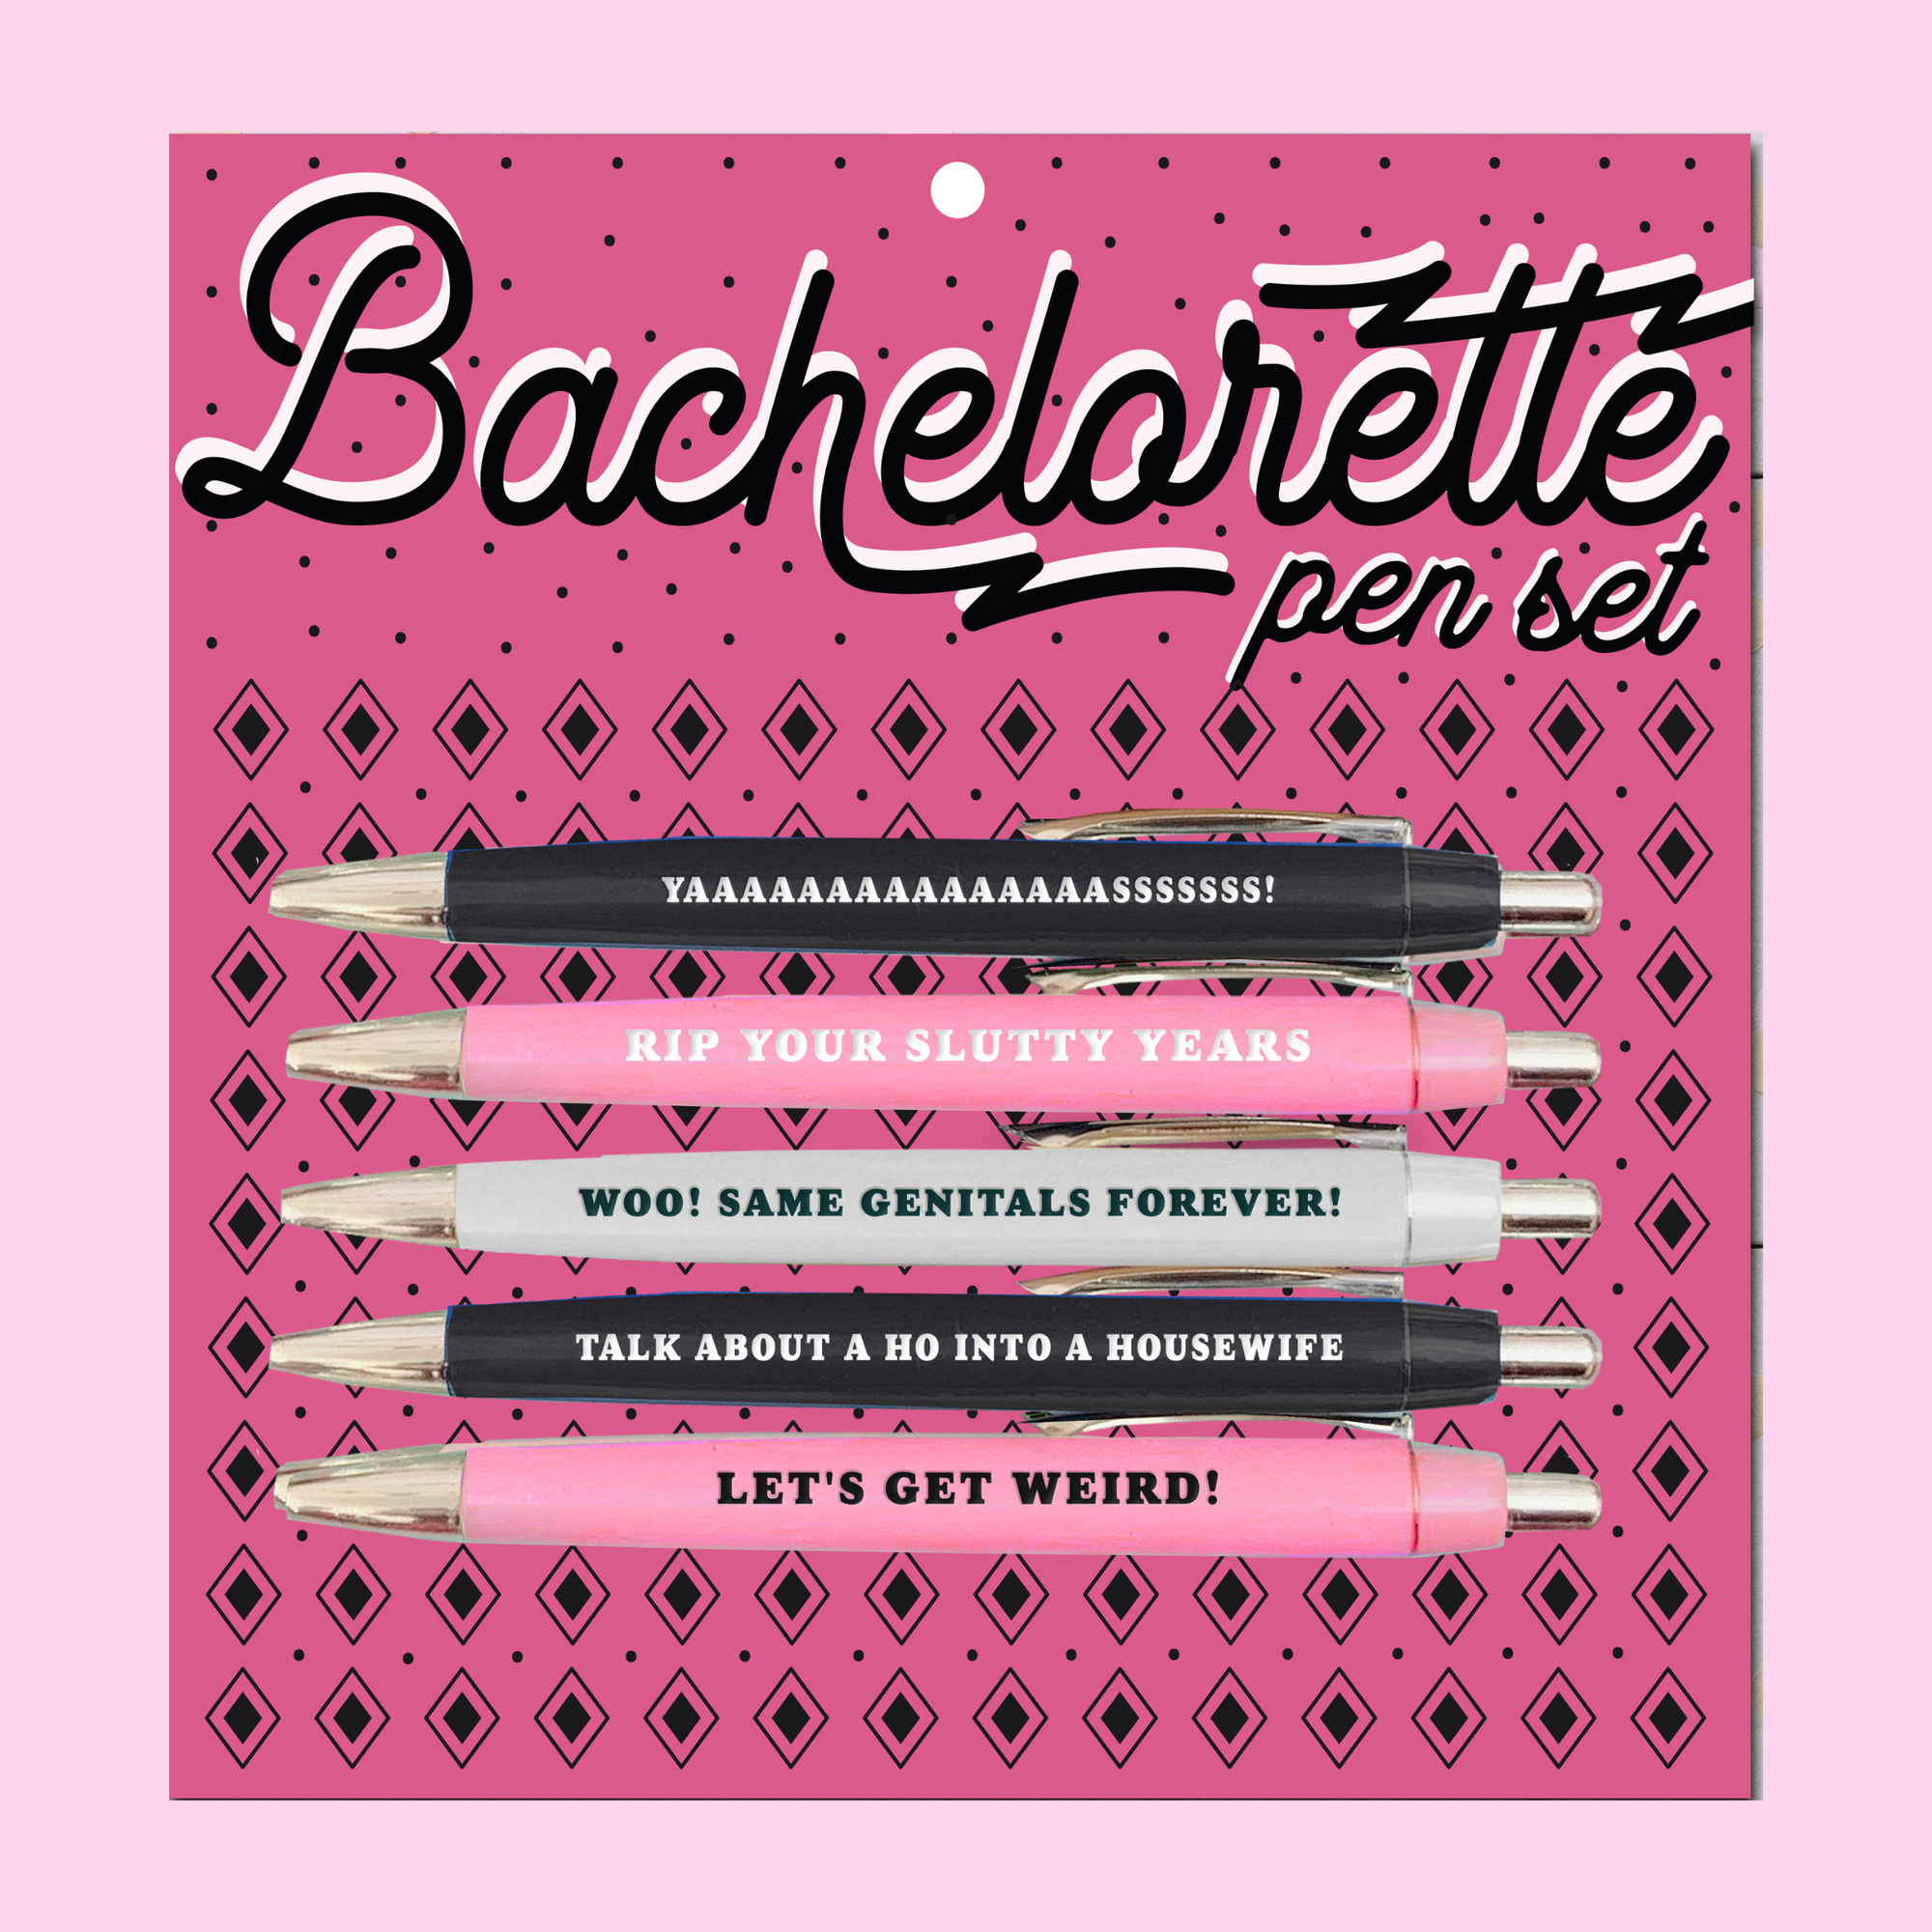 Bachelorette Pen Set